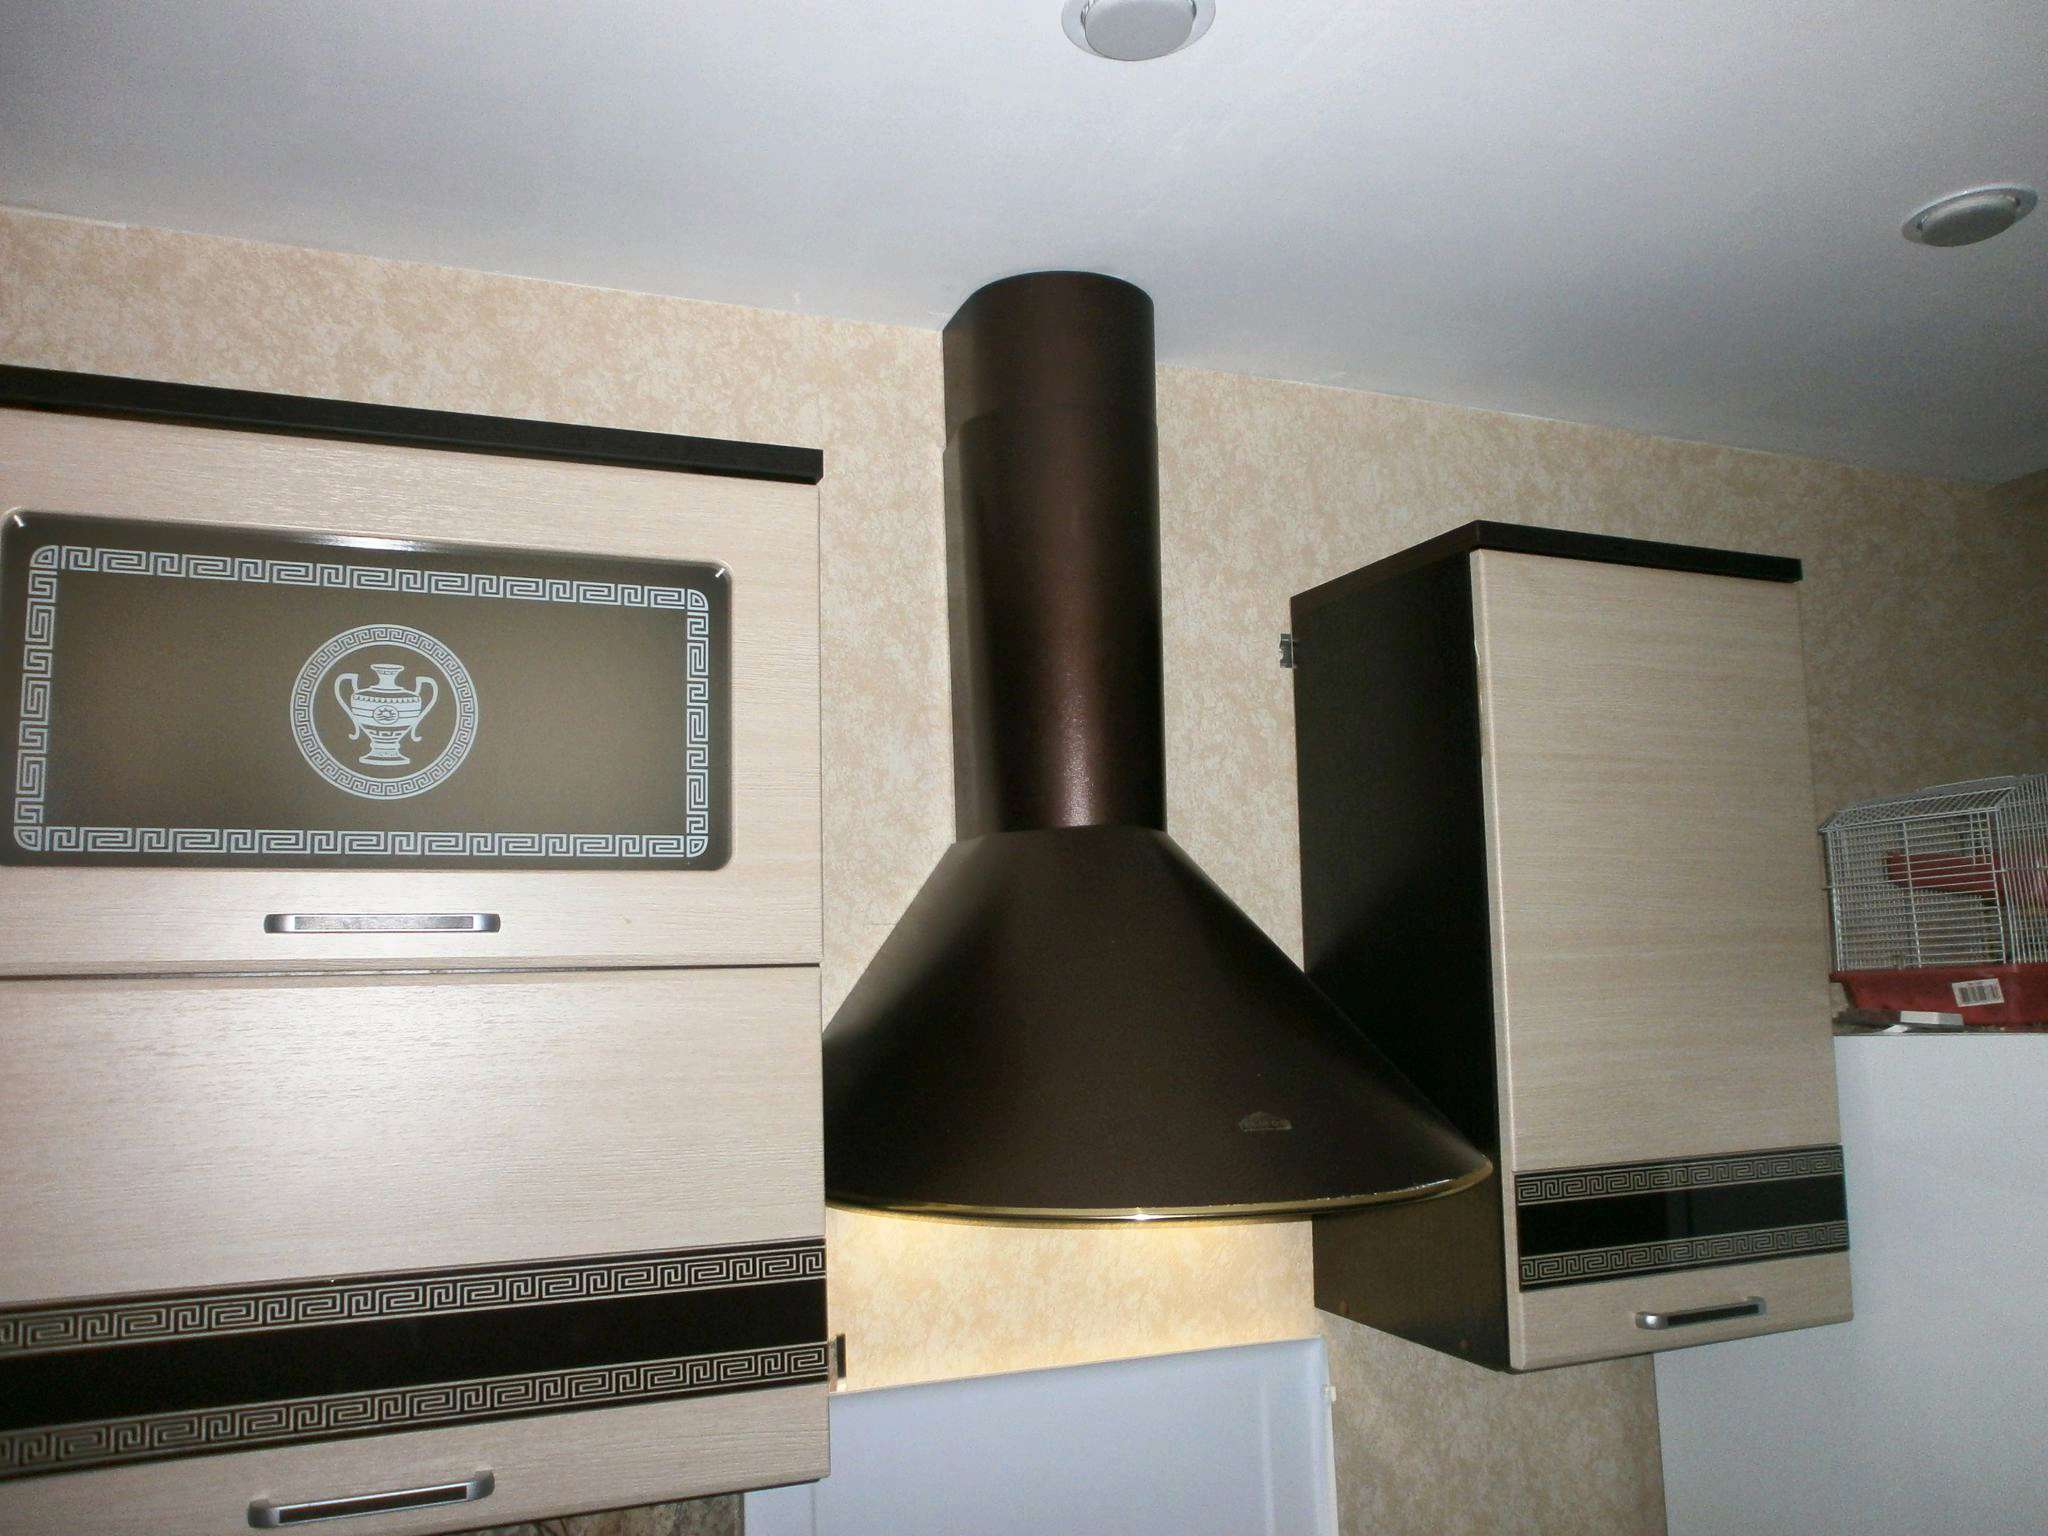 монтаж вытяжки для кухни без отвода в вентиляцию